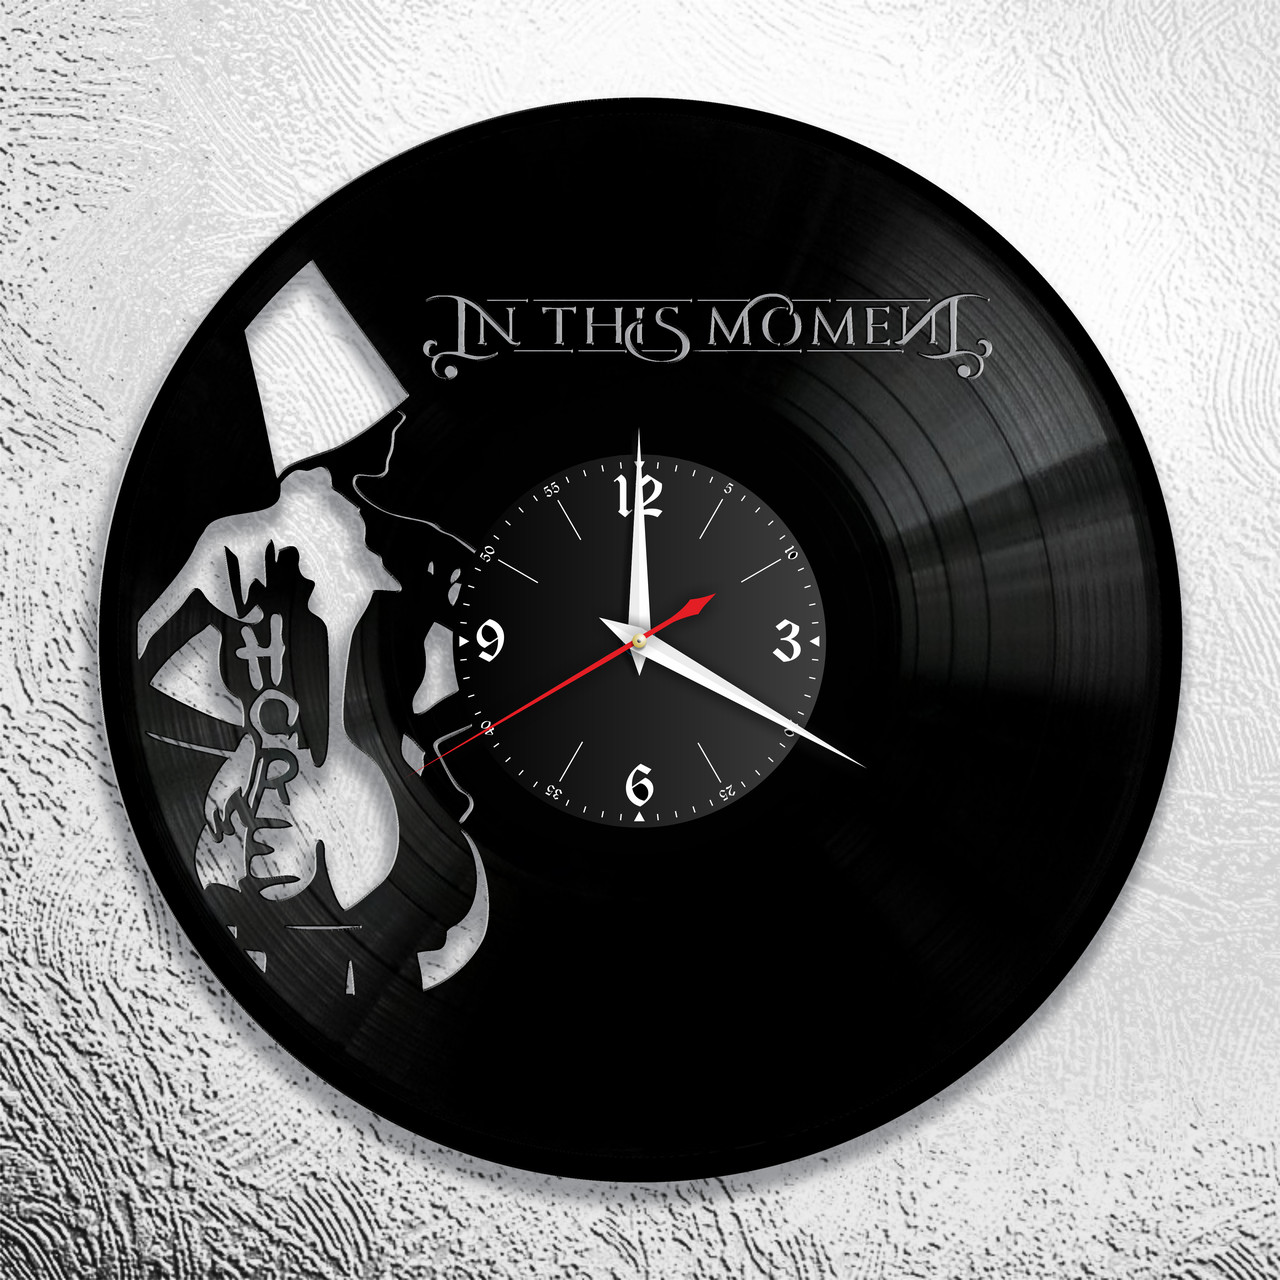 Часы из виниловой пластинки "In This Moment" версия 1, фото 1